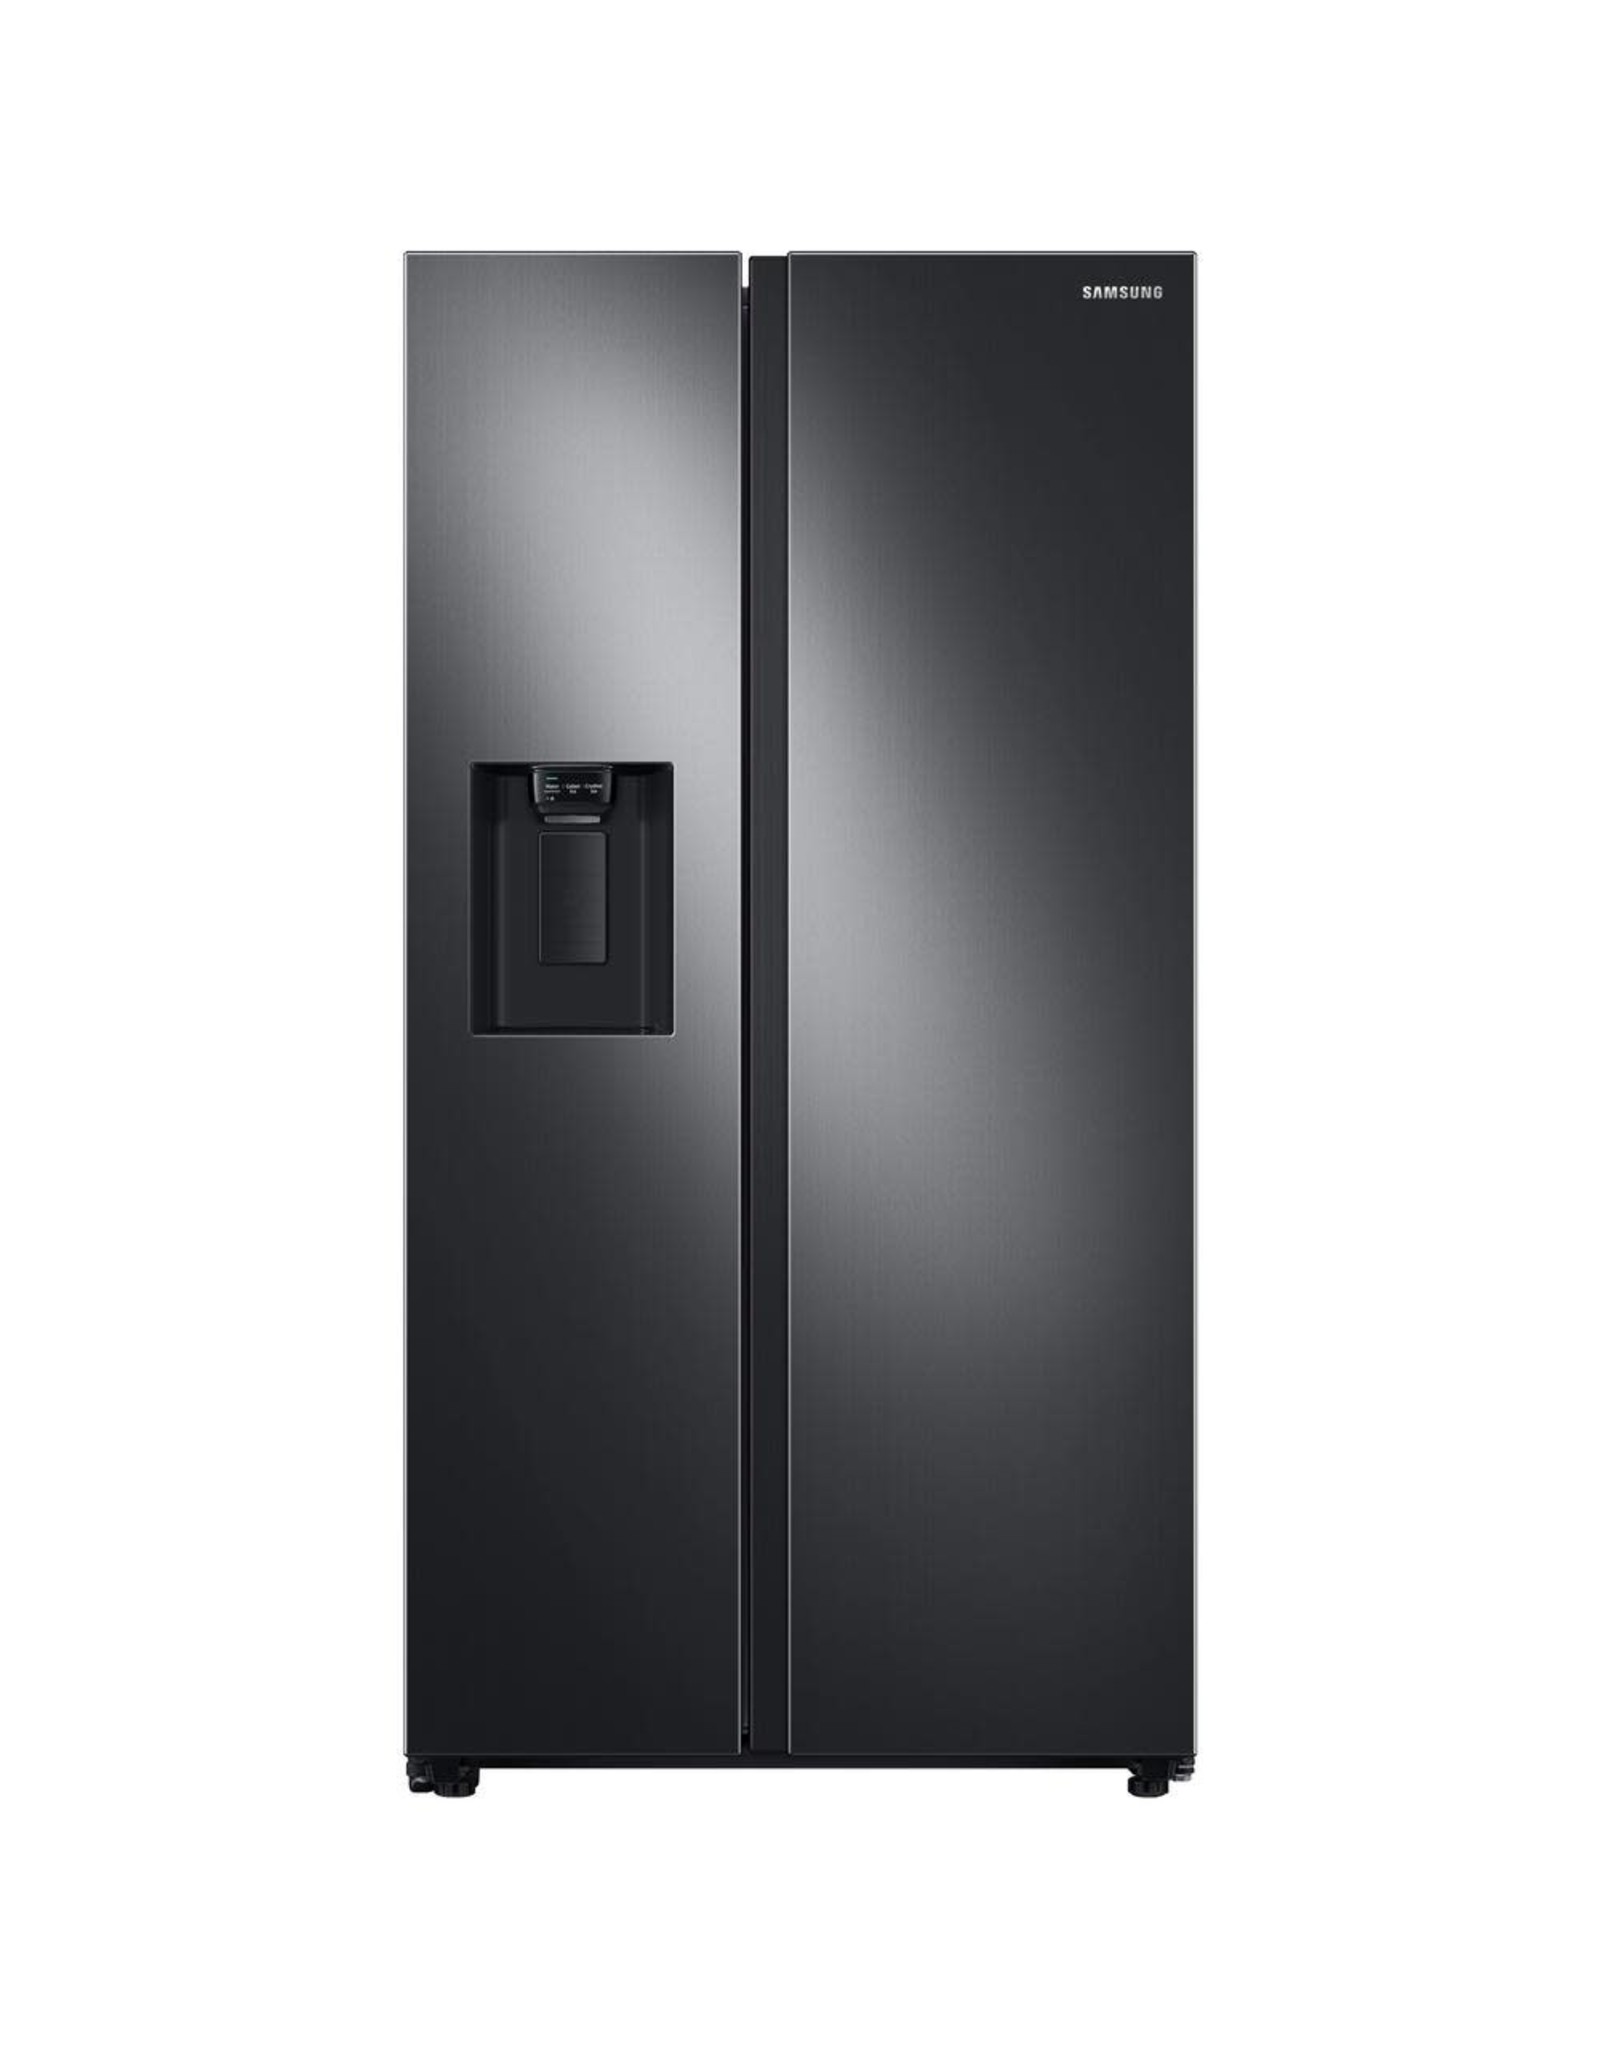 SAMSUNG RS27T5200SG Samsung 27.4 cu. ft. Side by Side Refrigerator in Fingerprint Resistant Black Stainless Steel